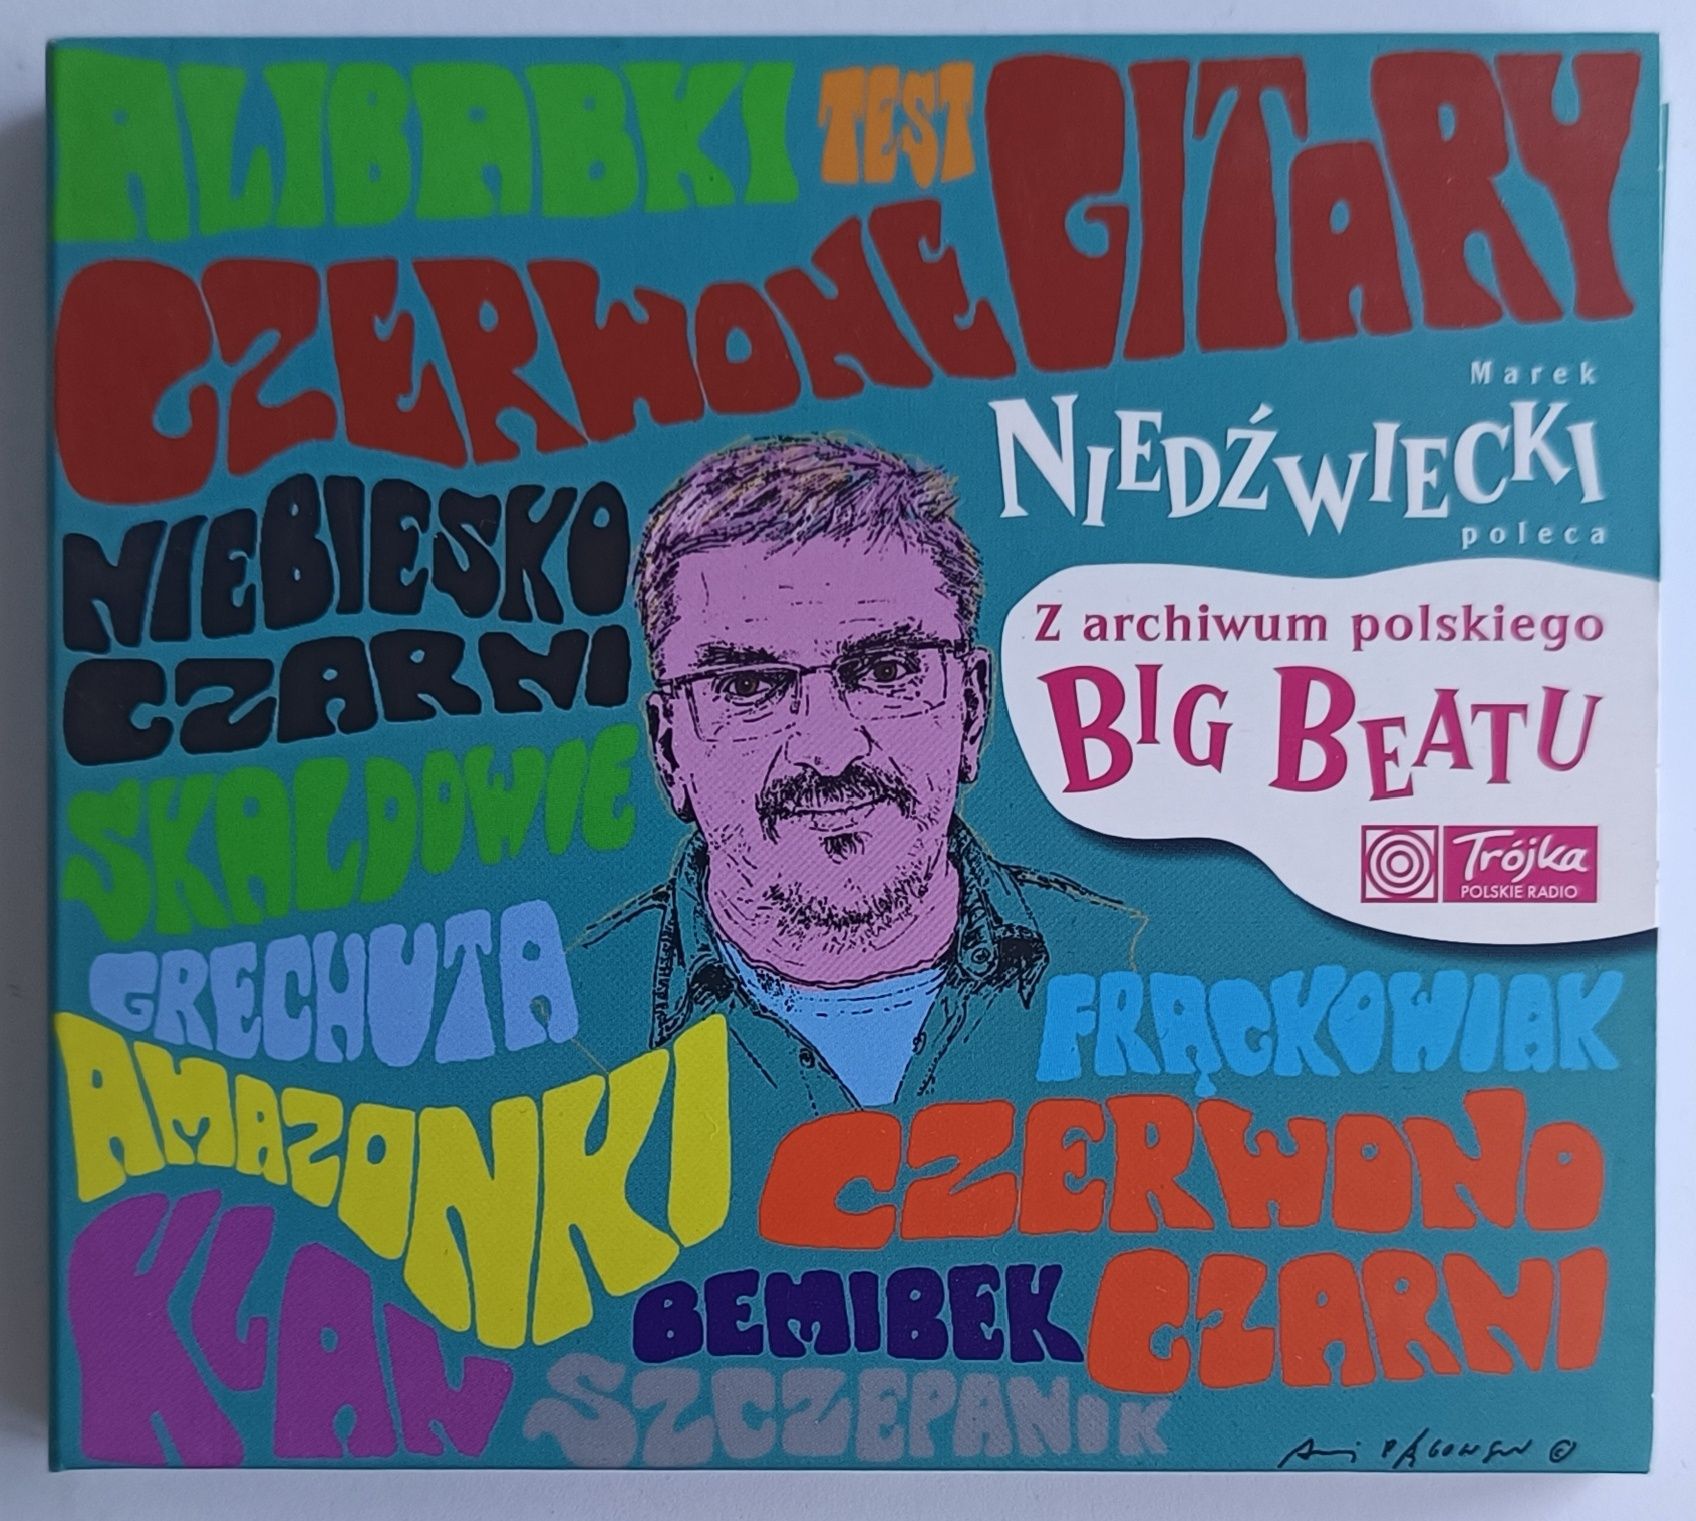 Marek Niedźwiecki poleca Z Archiwum Polskiego Big -Beatu 2CD 2012r